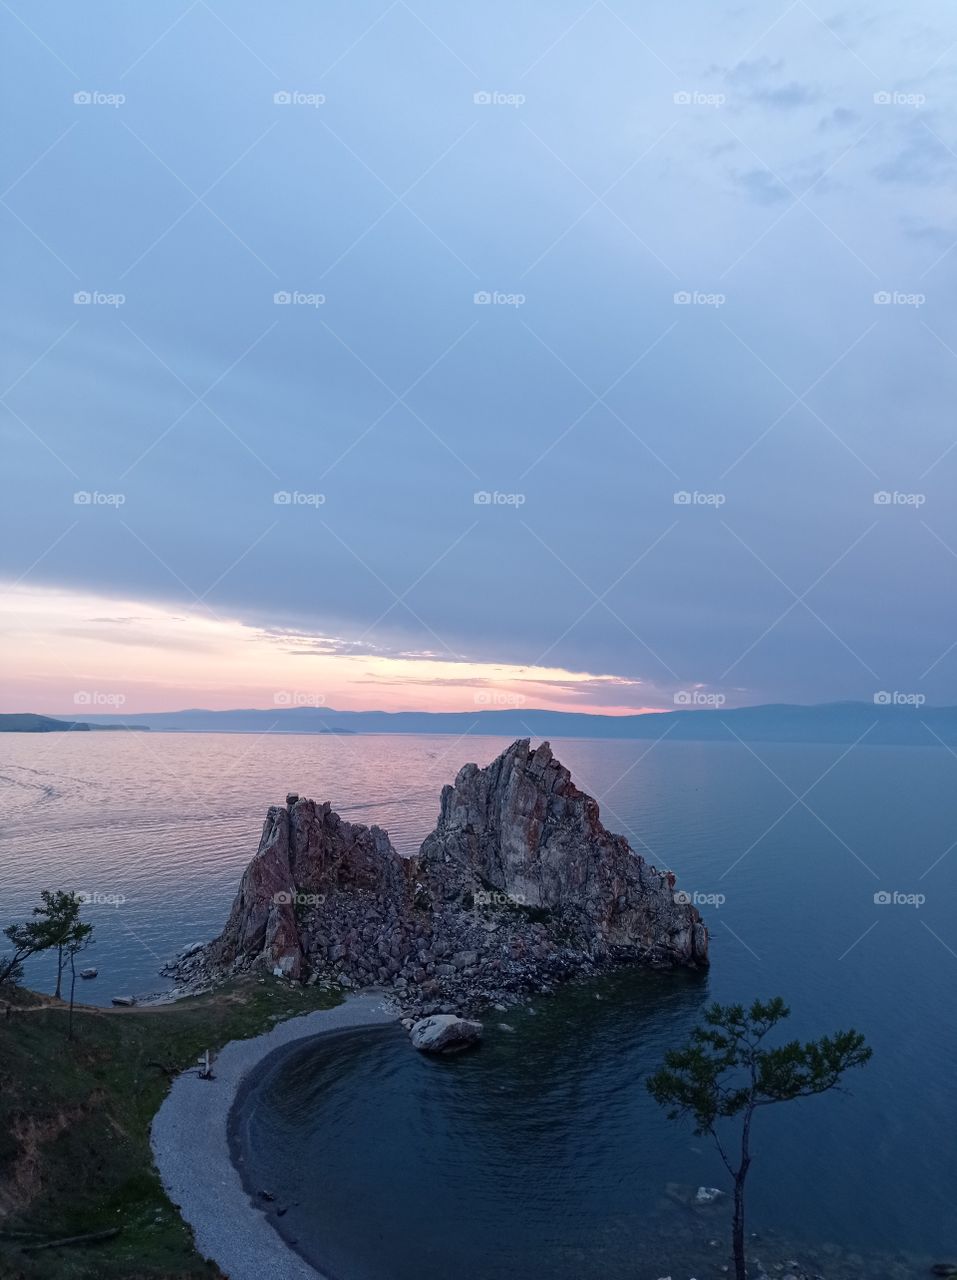 Sunset on Baikal. Закат на Байкале